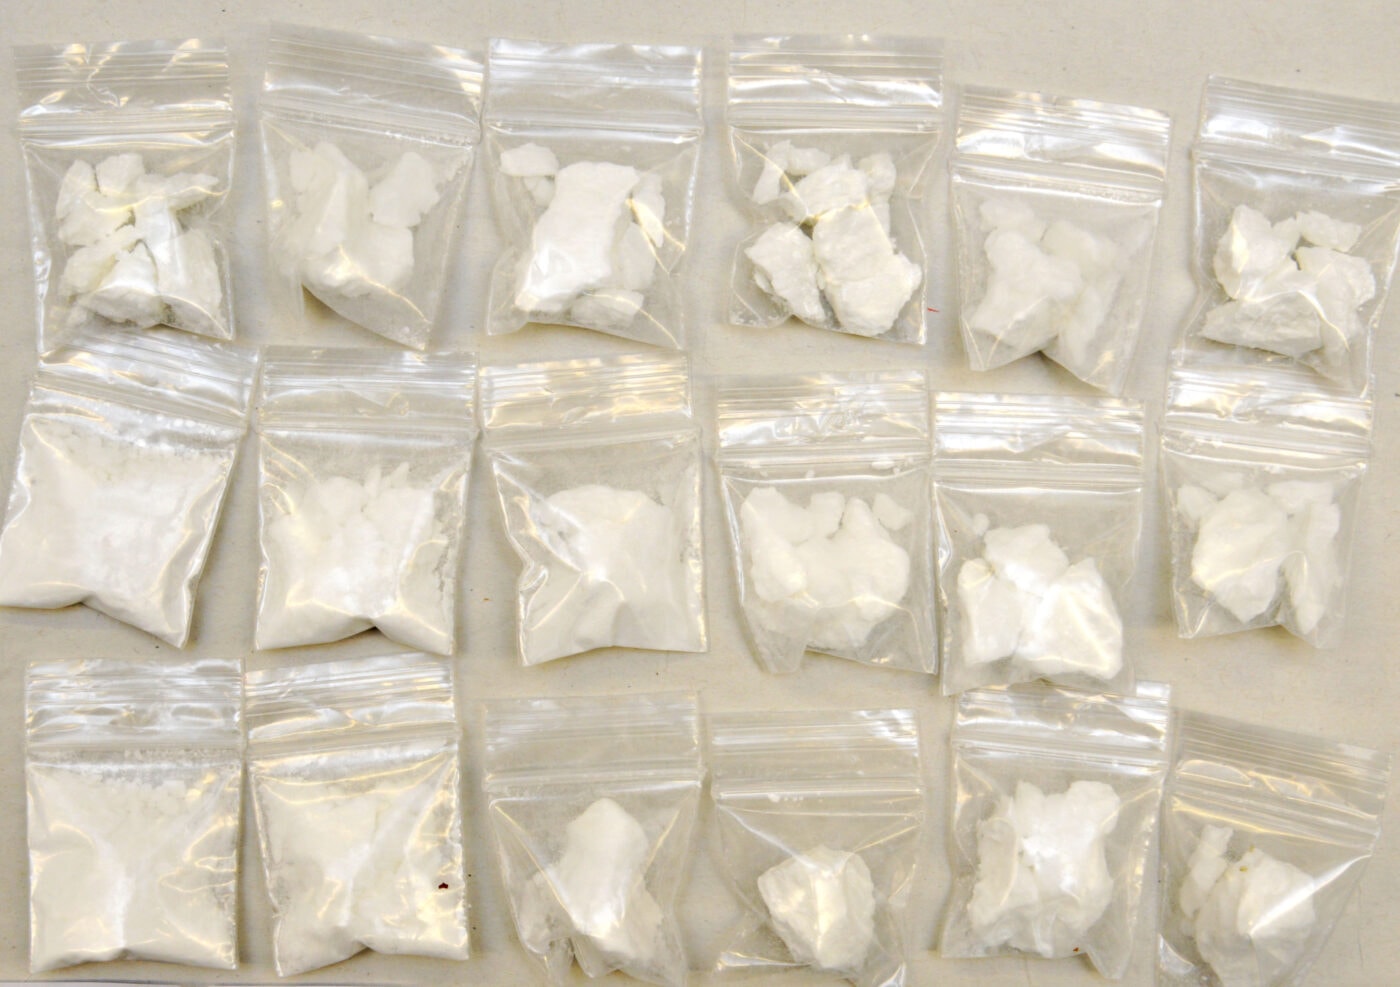 Drogenring gesprengt: Kokain, Heroin, Marihuana, Waffen und rund 100’000 Franken mutmassliches Drogengeld sichergestellt